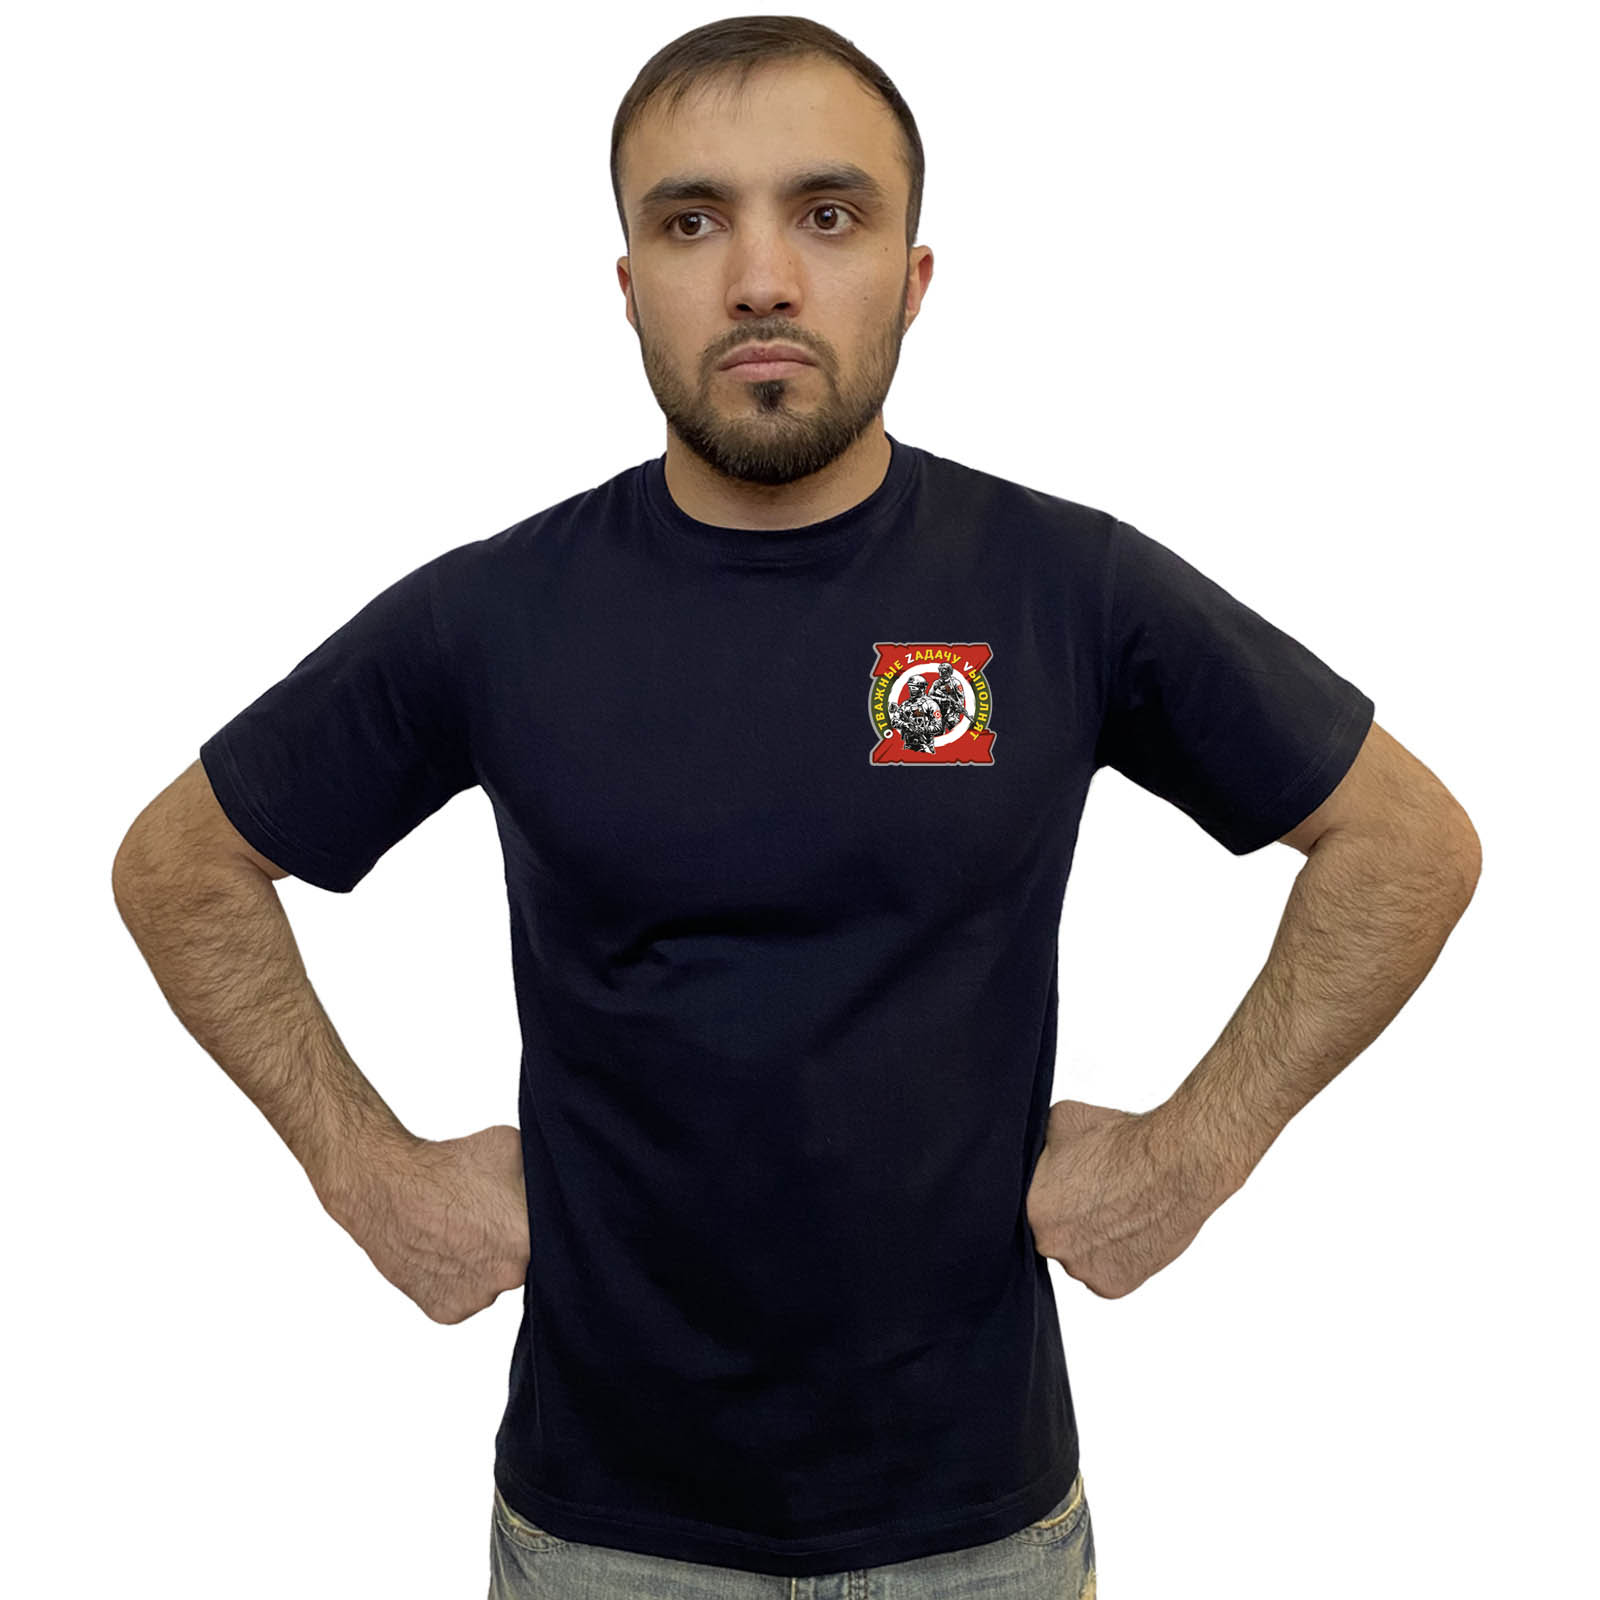 Тёмно-синяя футболка с термотрансфером "Отважные Zадачу Vыполнят"